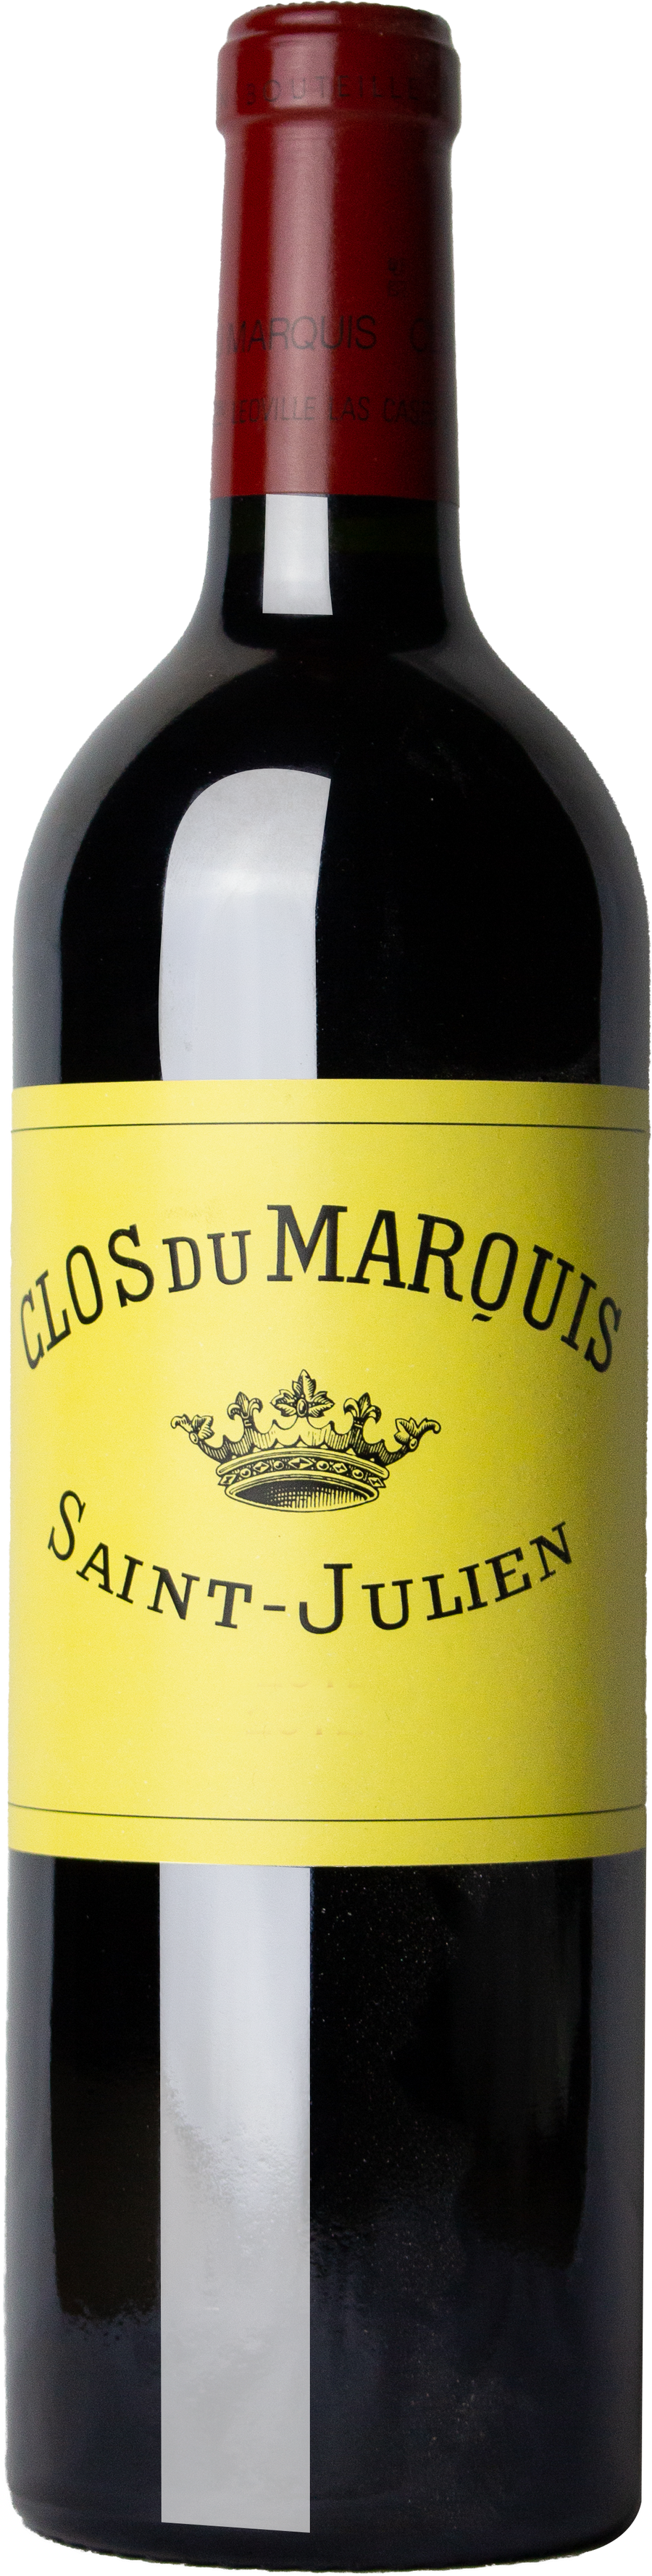 Clos du Marquis - Saint-Julien 2015